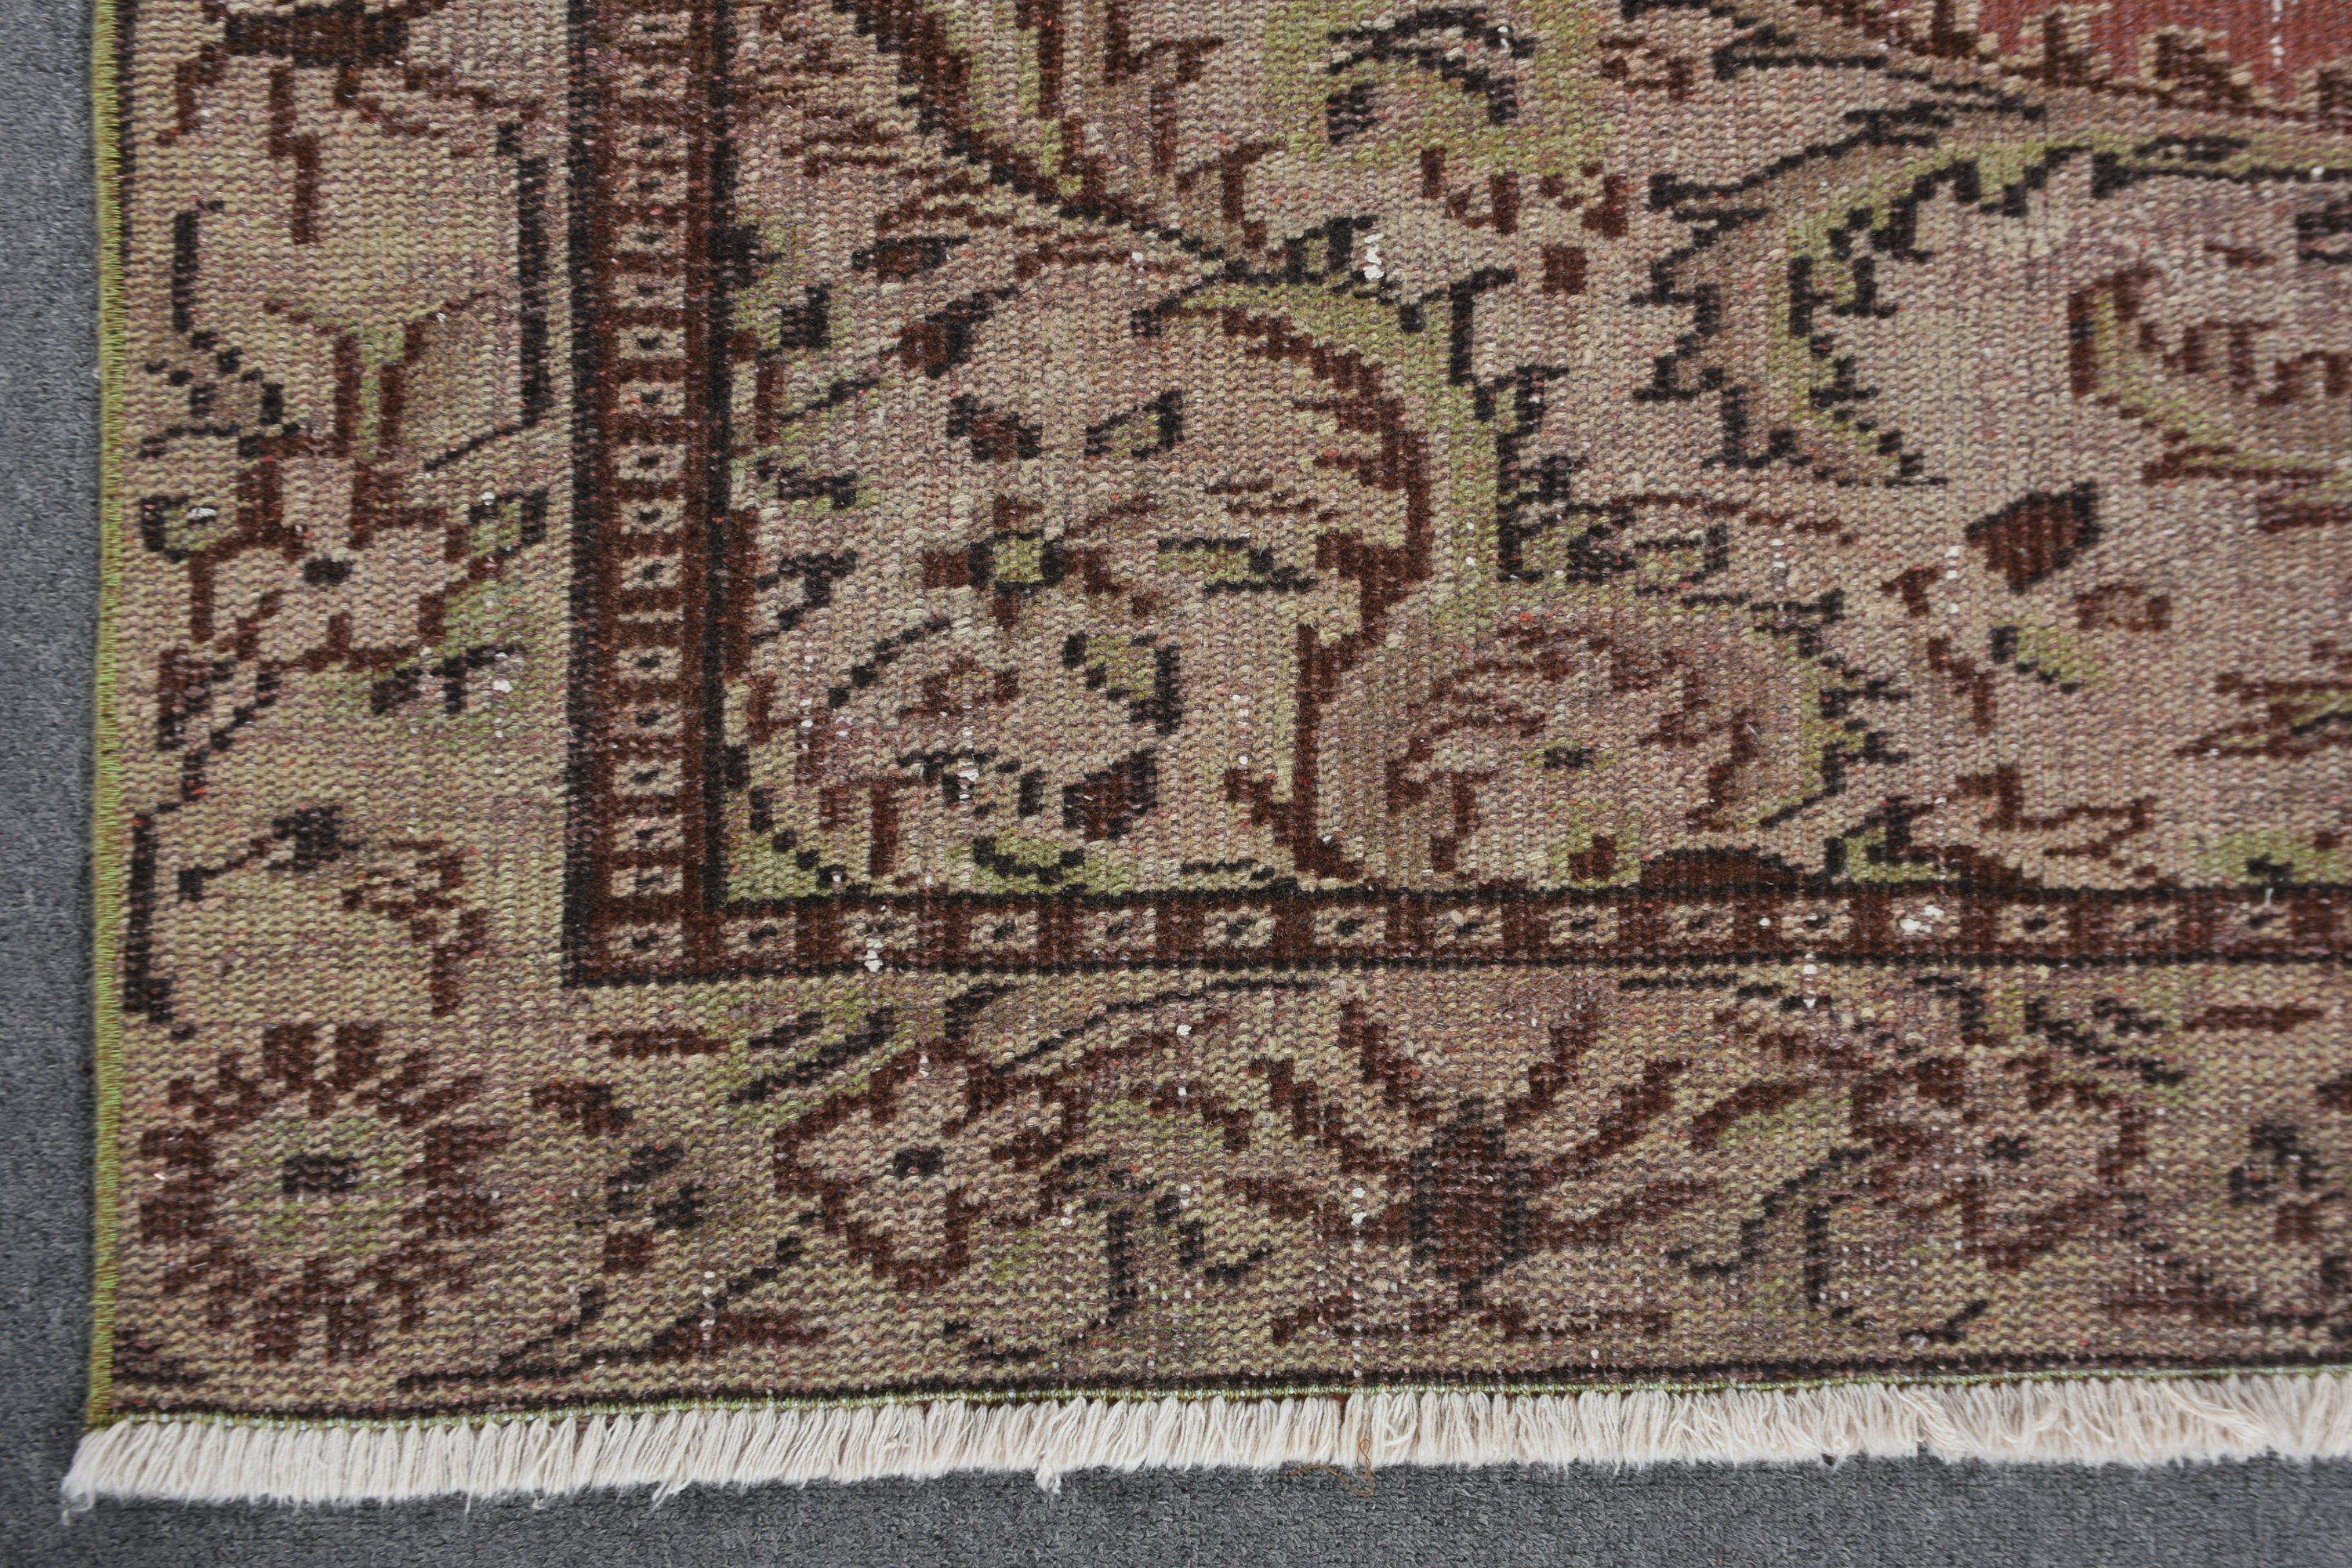 Wool Rugs, Turkish Rugs, Art Rugs, Vintage Rug, Oriental Rug, Green Antique Rug, 5.6x9.2 ft Large Rugs, Living Room Rug, Dining Room Rug